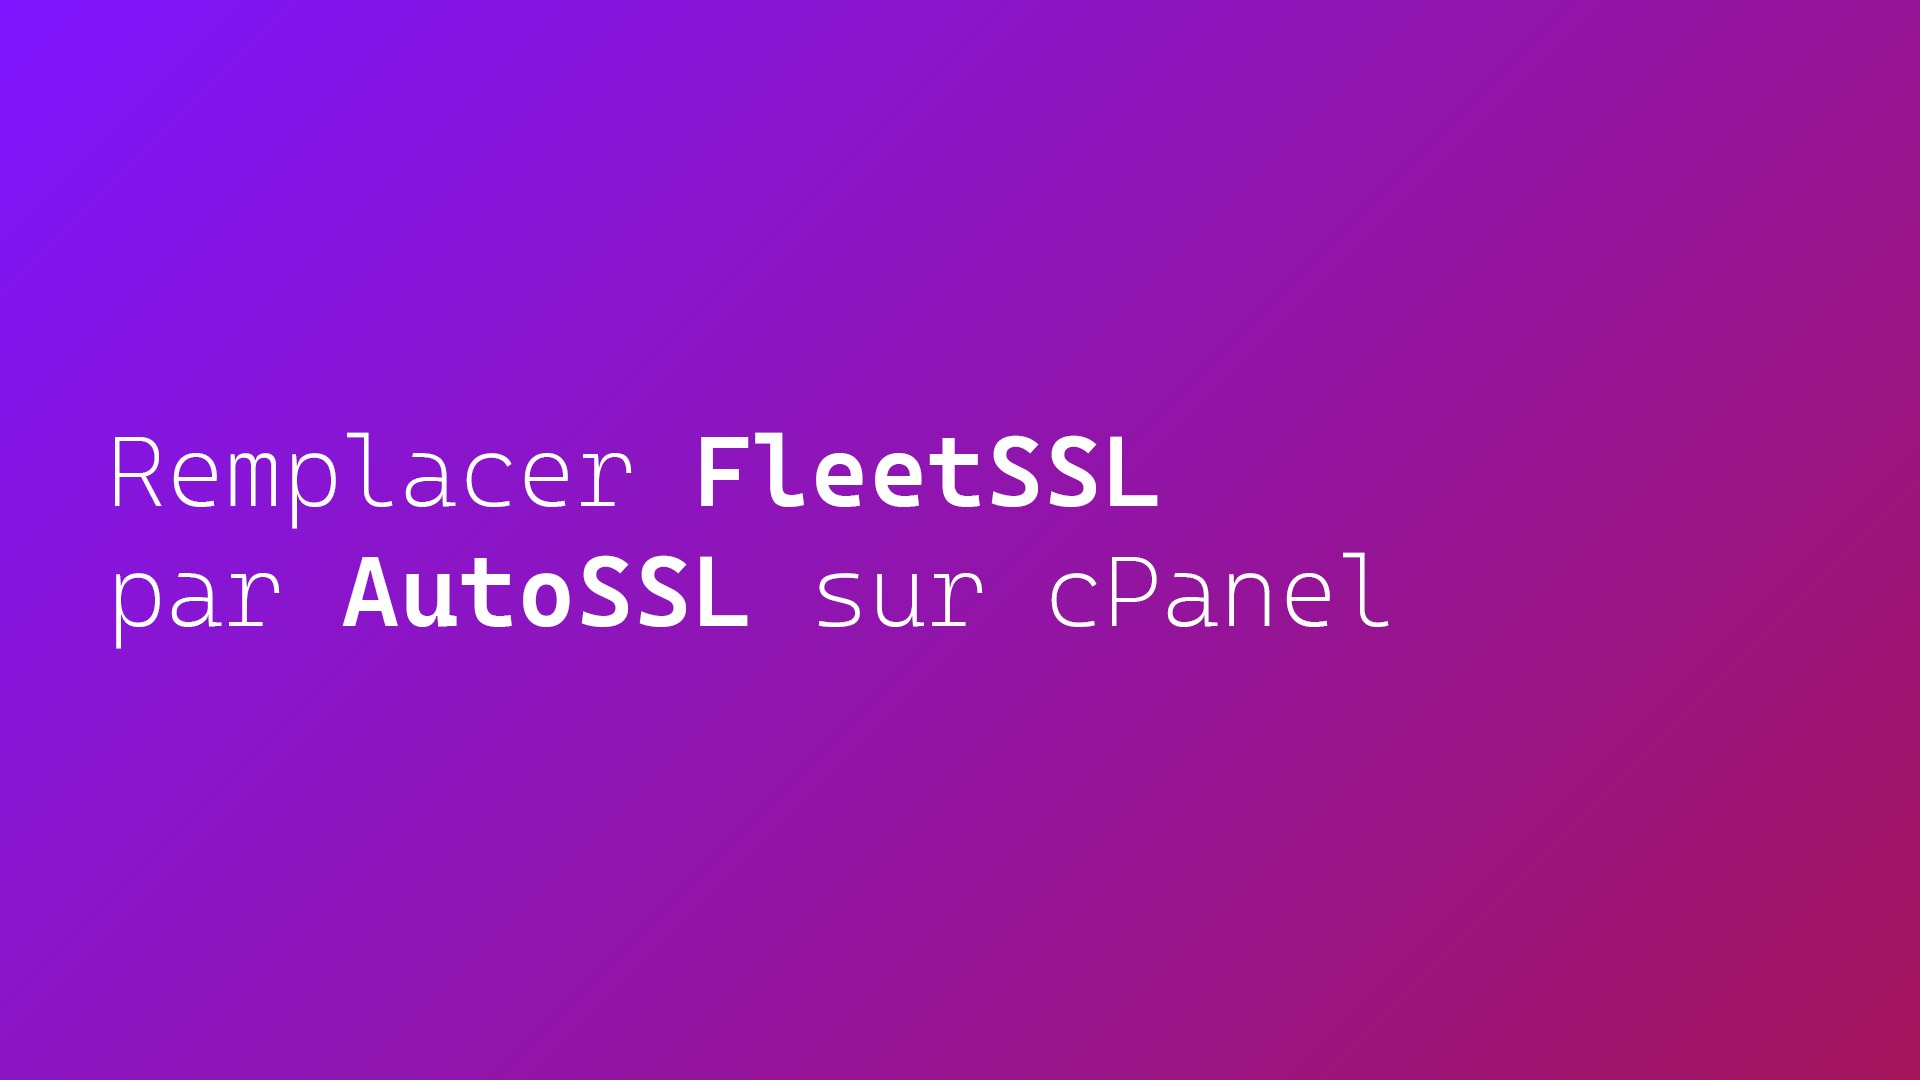 Remplacer FleetSSL par AutoSSL sur cPanel